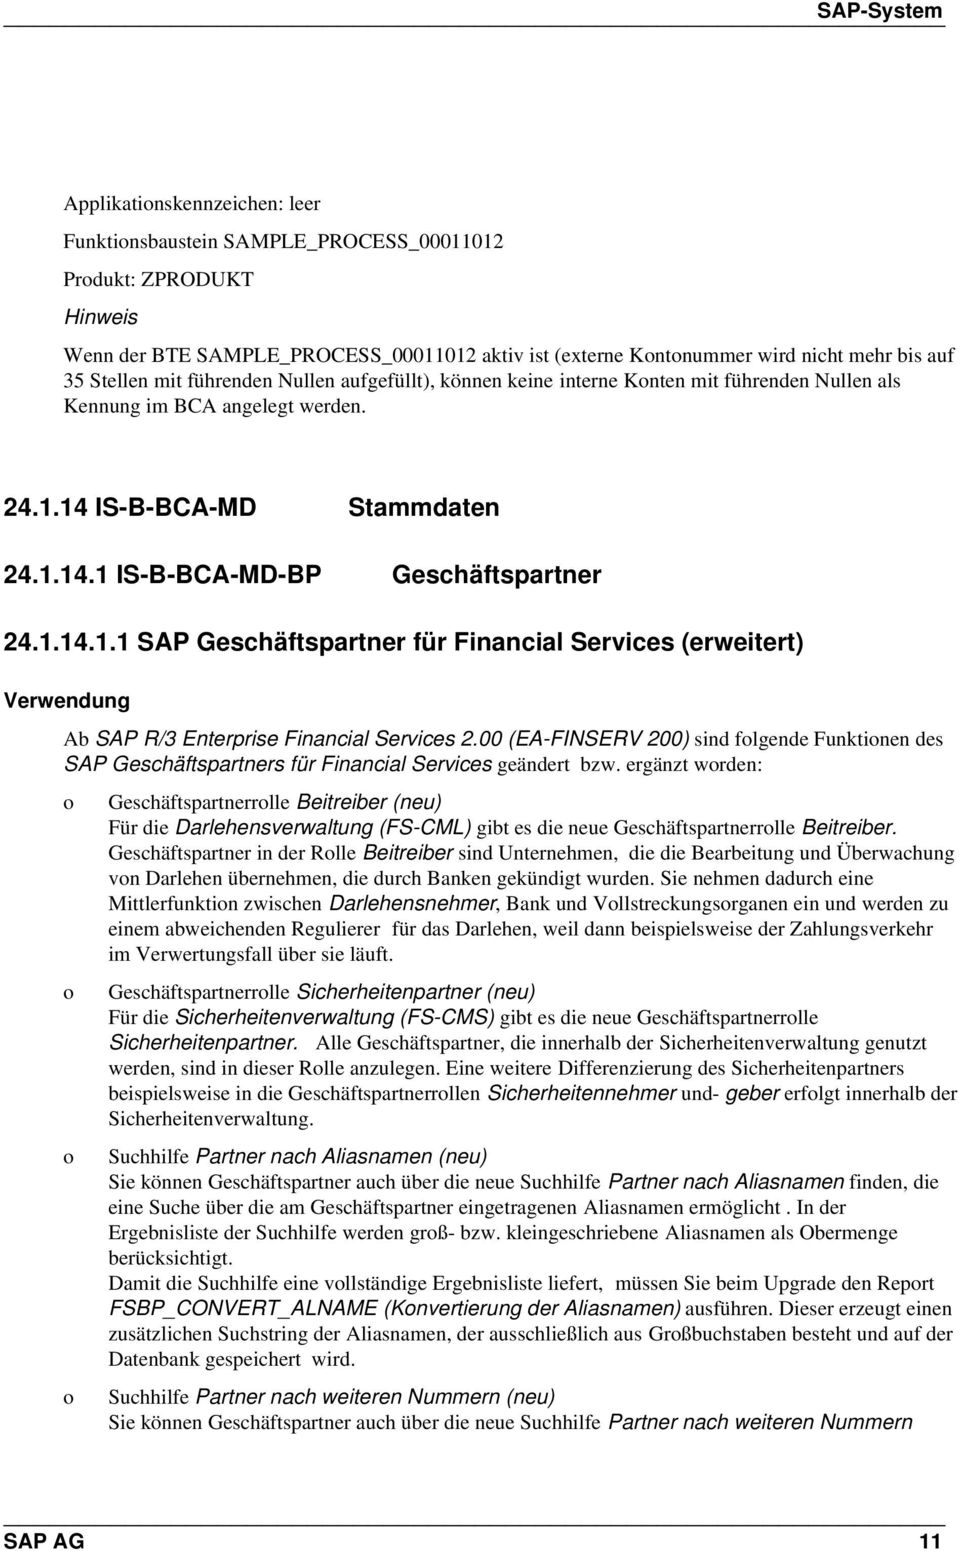 14 IS-B-BCA-MD Stammdaten 24.1.14.1 IS-B-BCA-MD-BP Geschäftspartner 24.1.14.1.1 SAP Geschäftspartner für Financial Services (erweitert) Ab SAP R/3 Enterprise Financial Services 2.